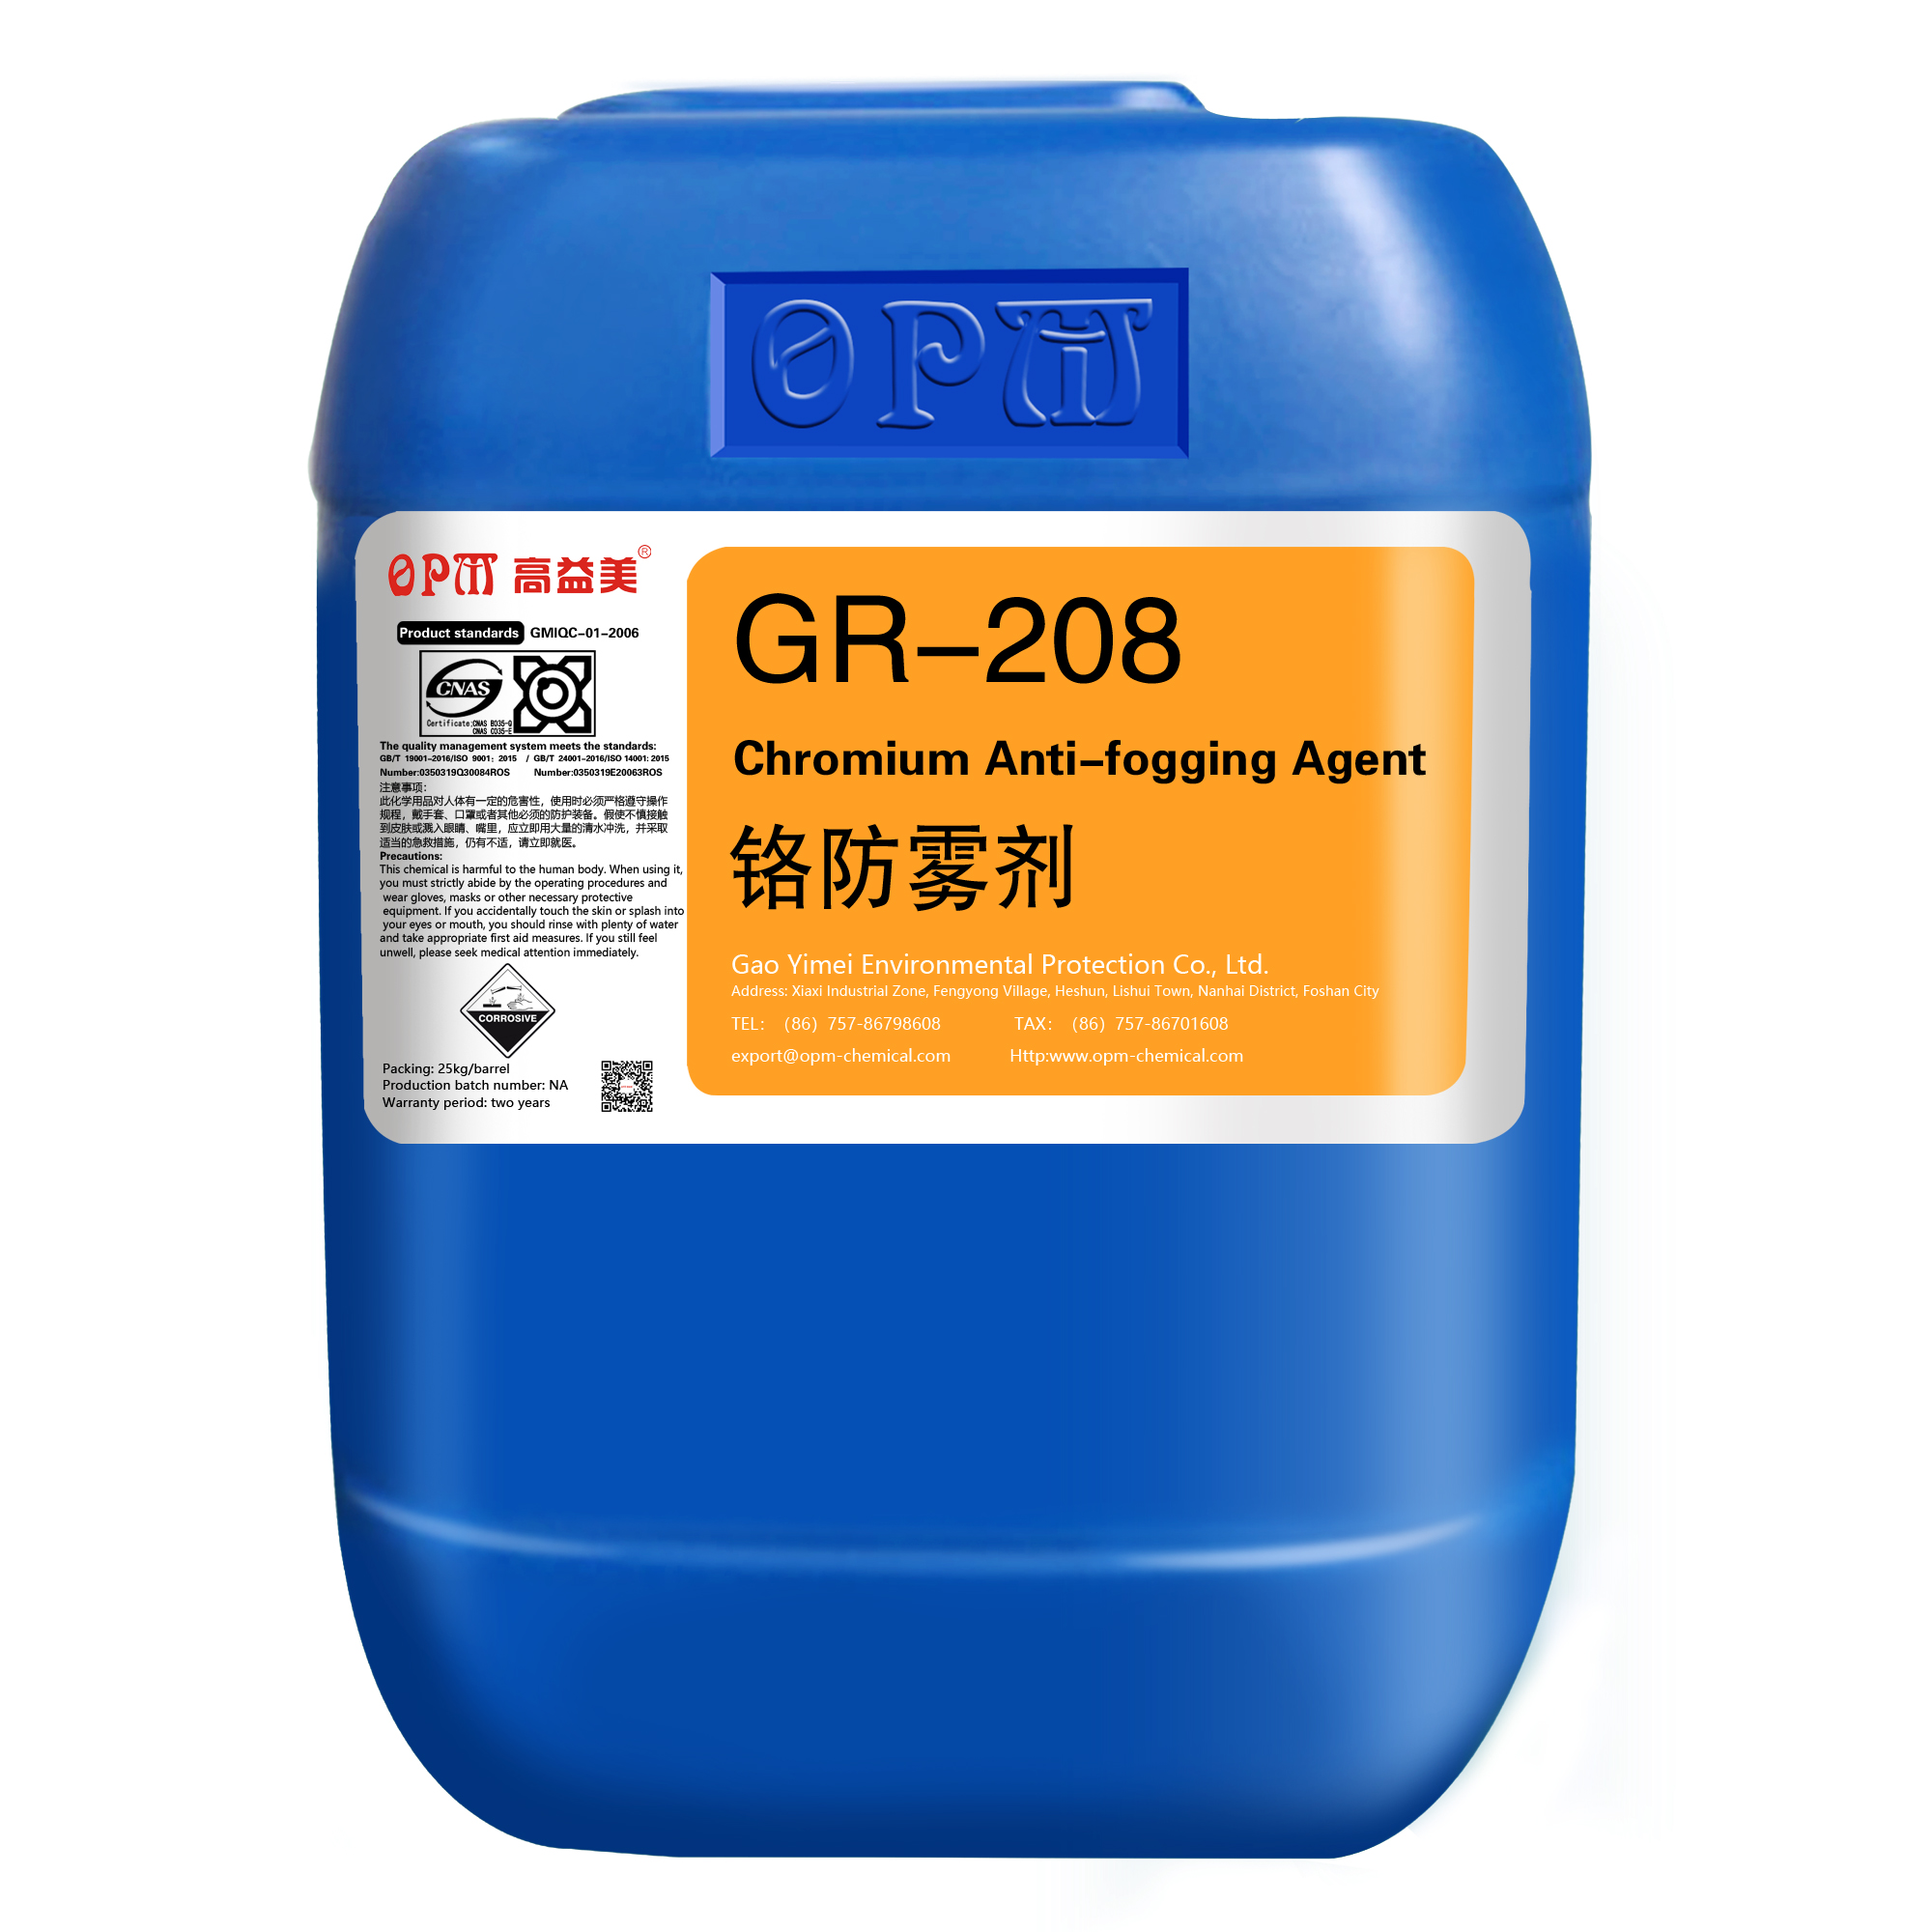 GR-208Chromium Anti-fogging Agent